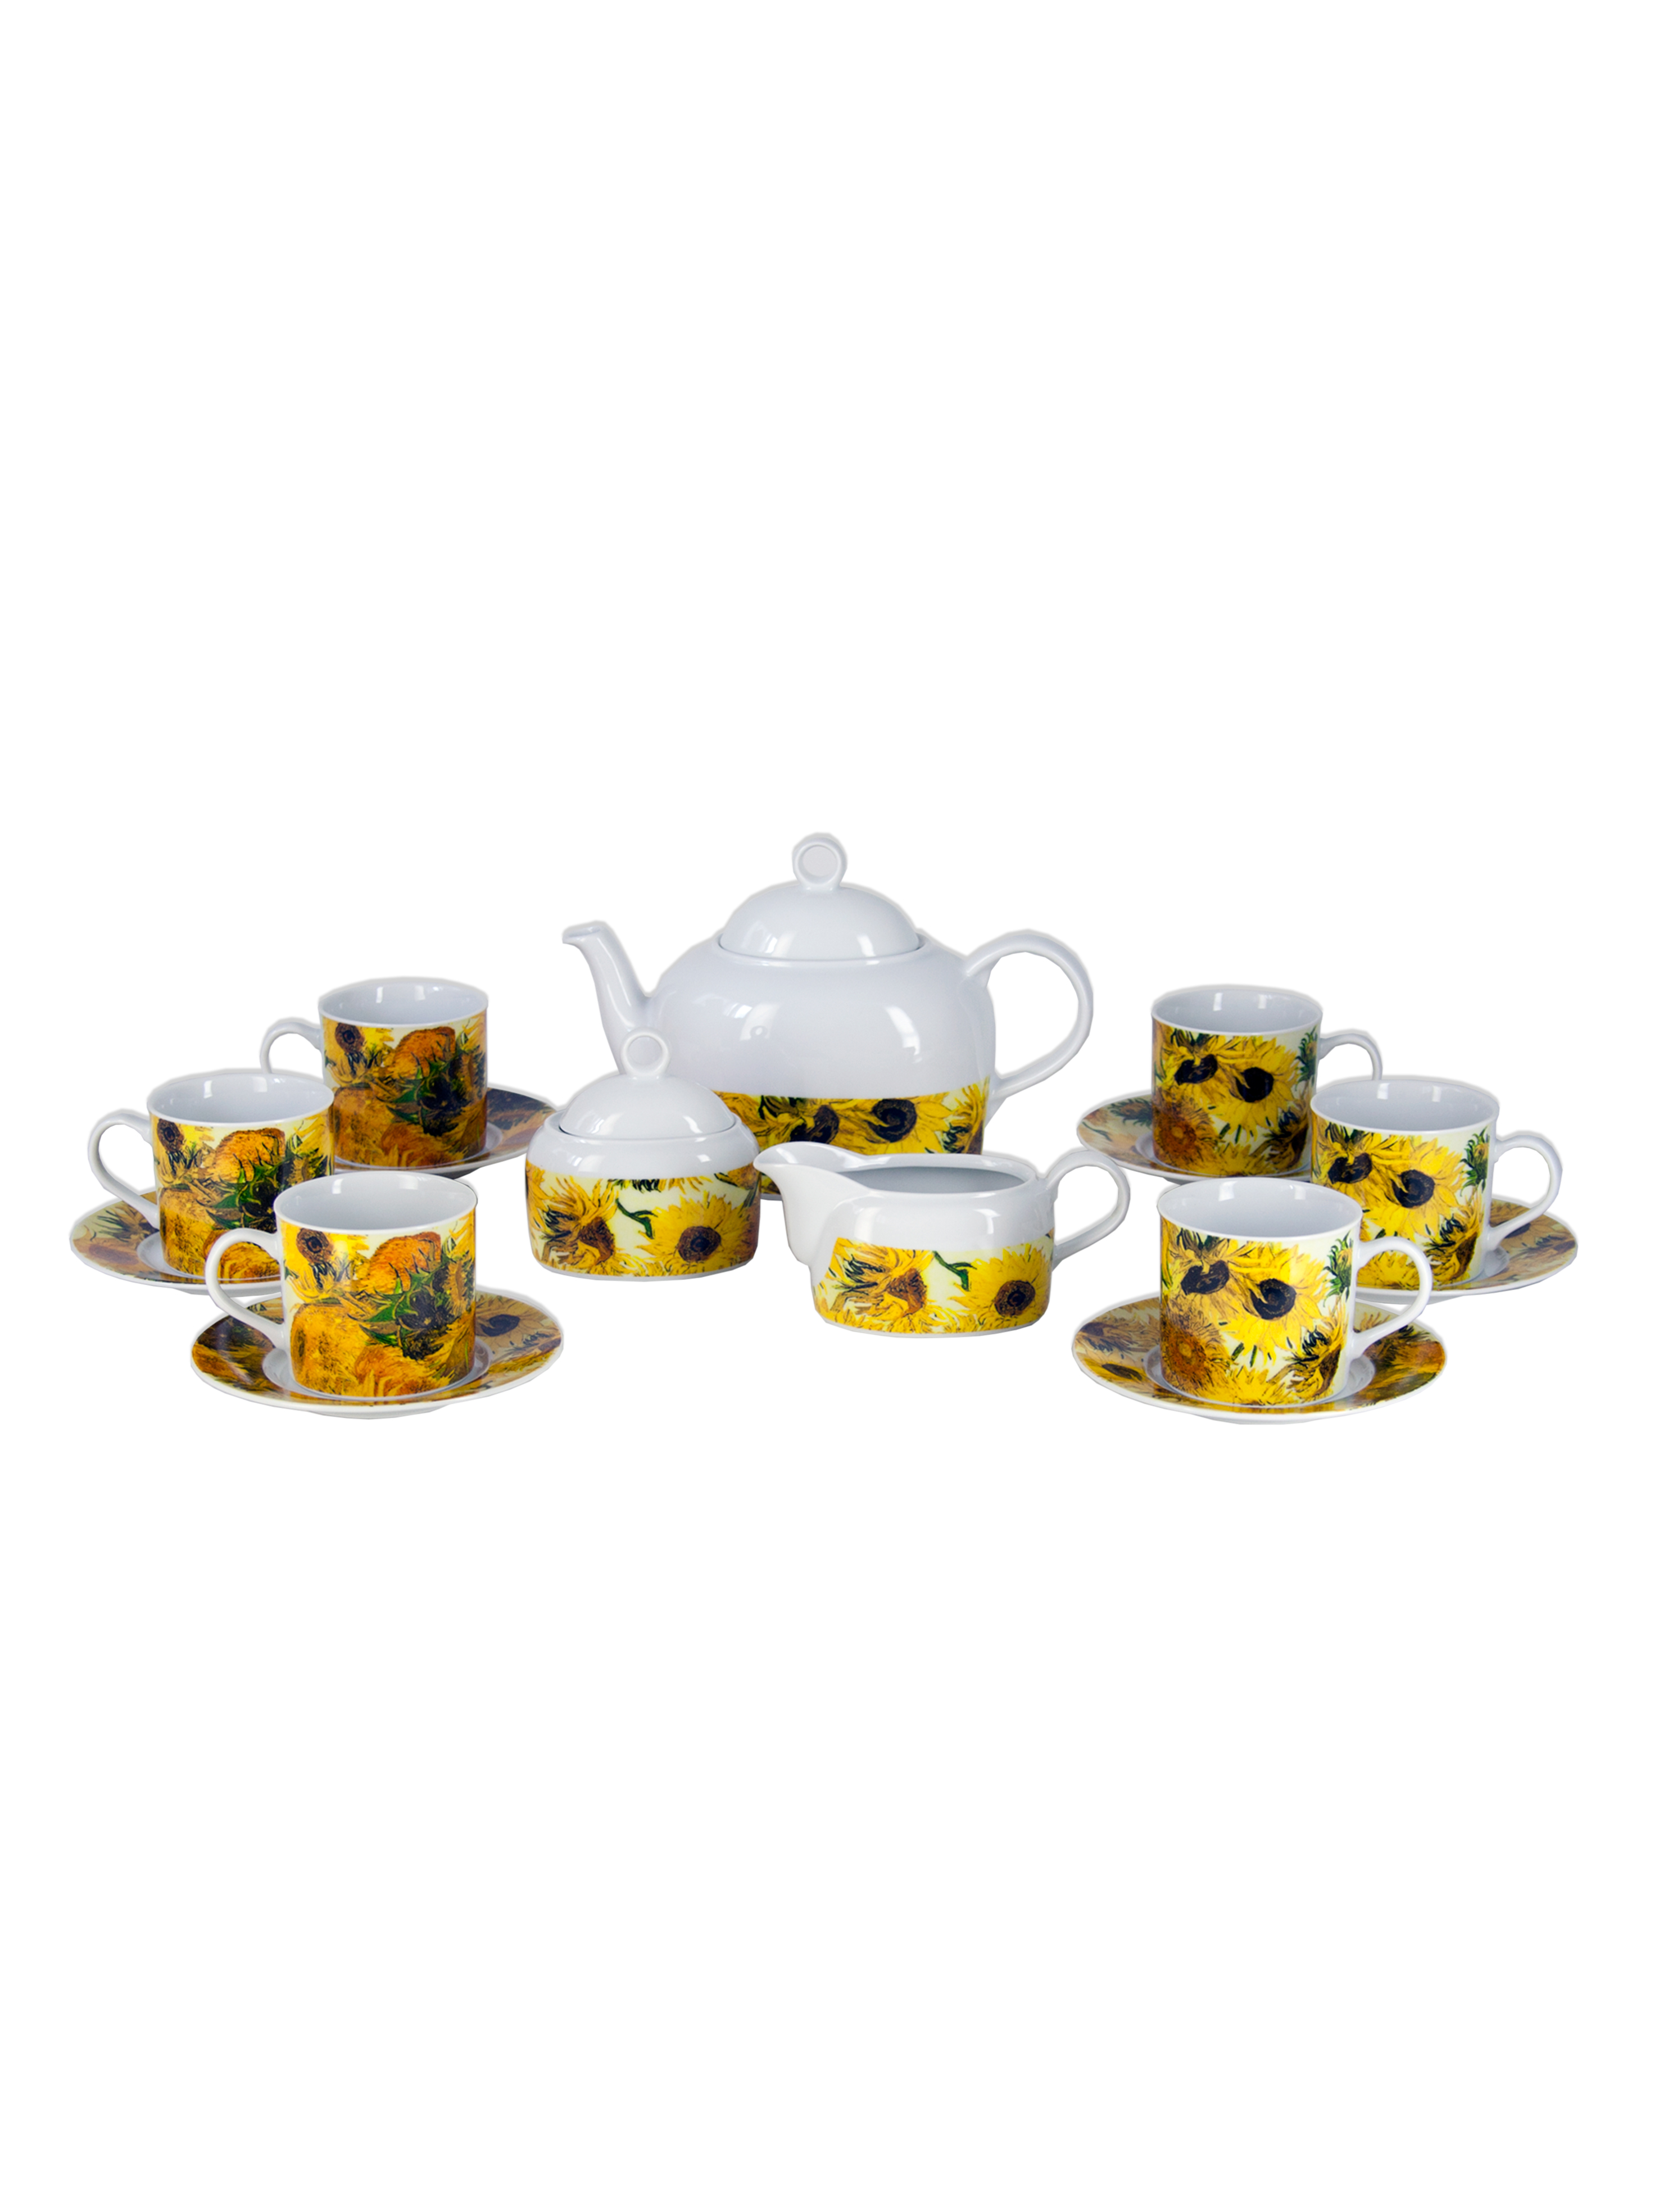 Чайный сервиз Cairo на 6 персон 17 предметов декор Подсолнухи. Фарфор Тхун, Чехия.